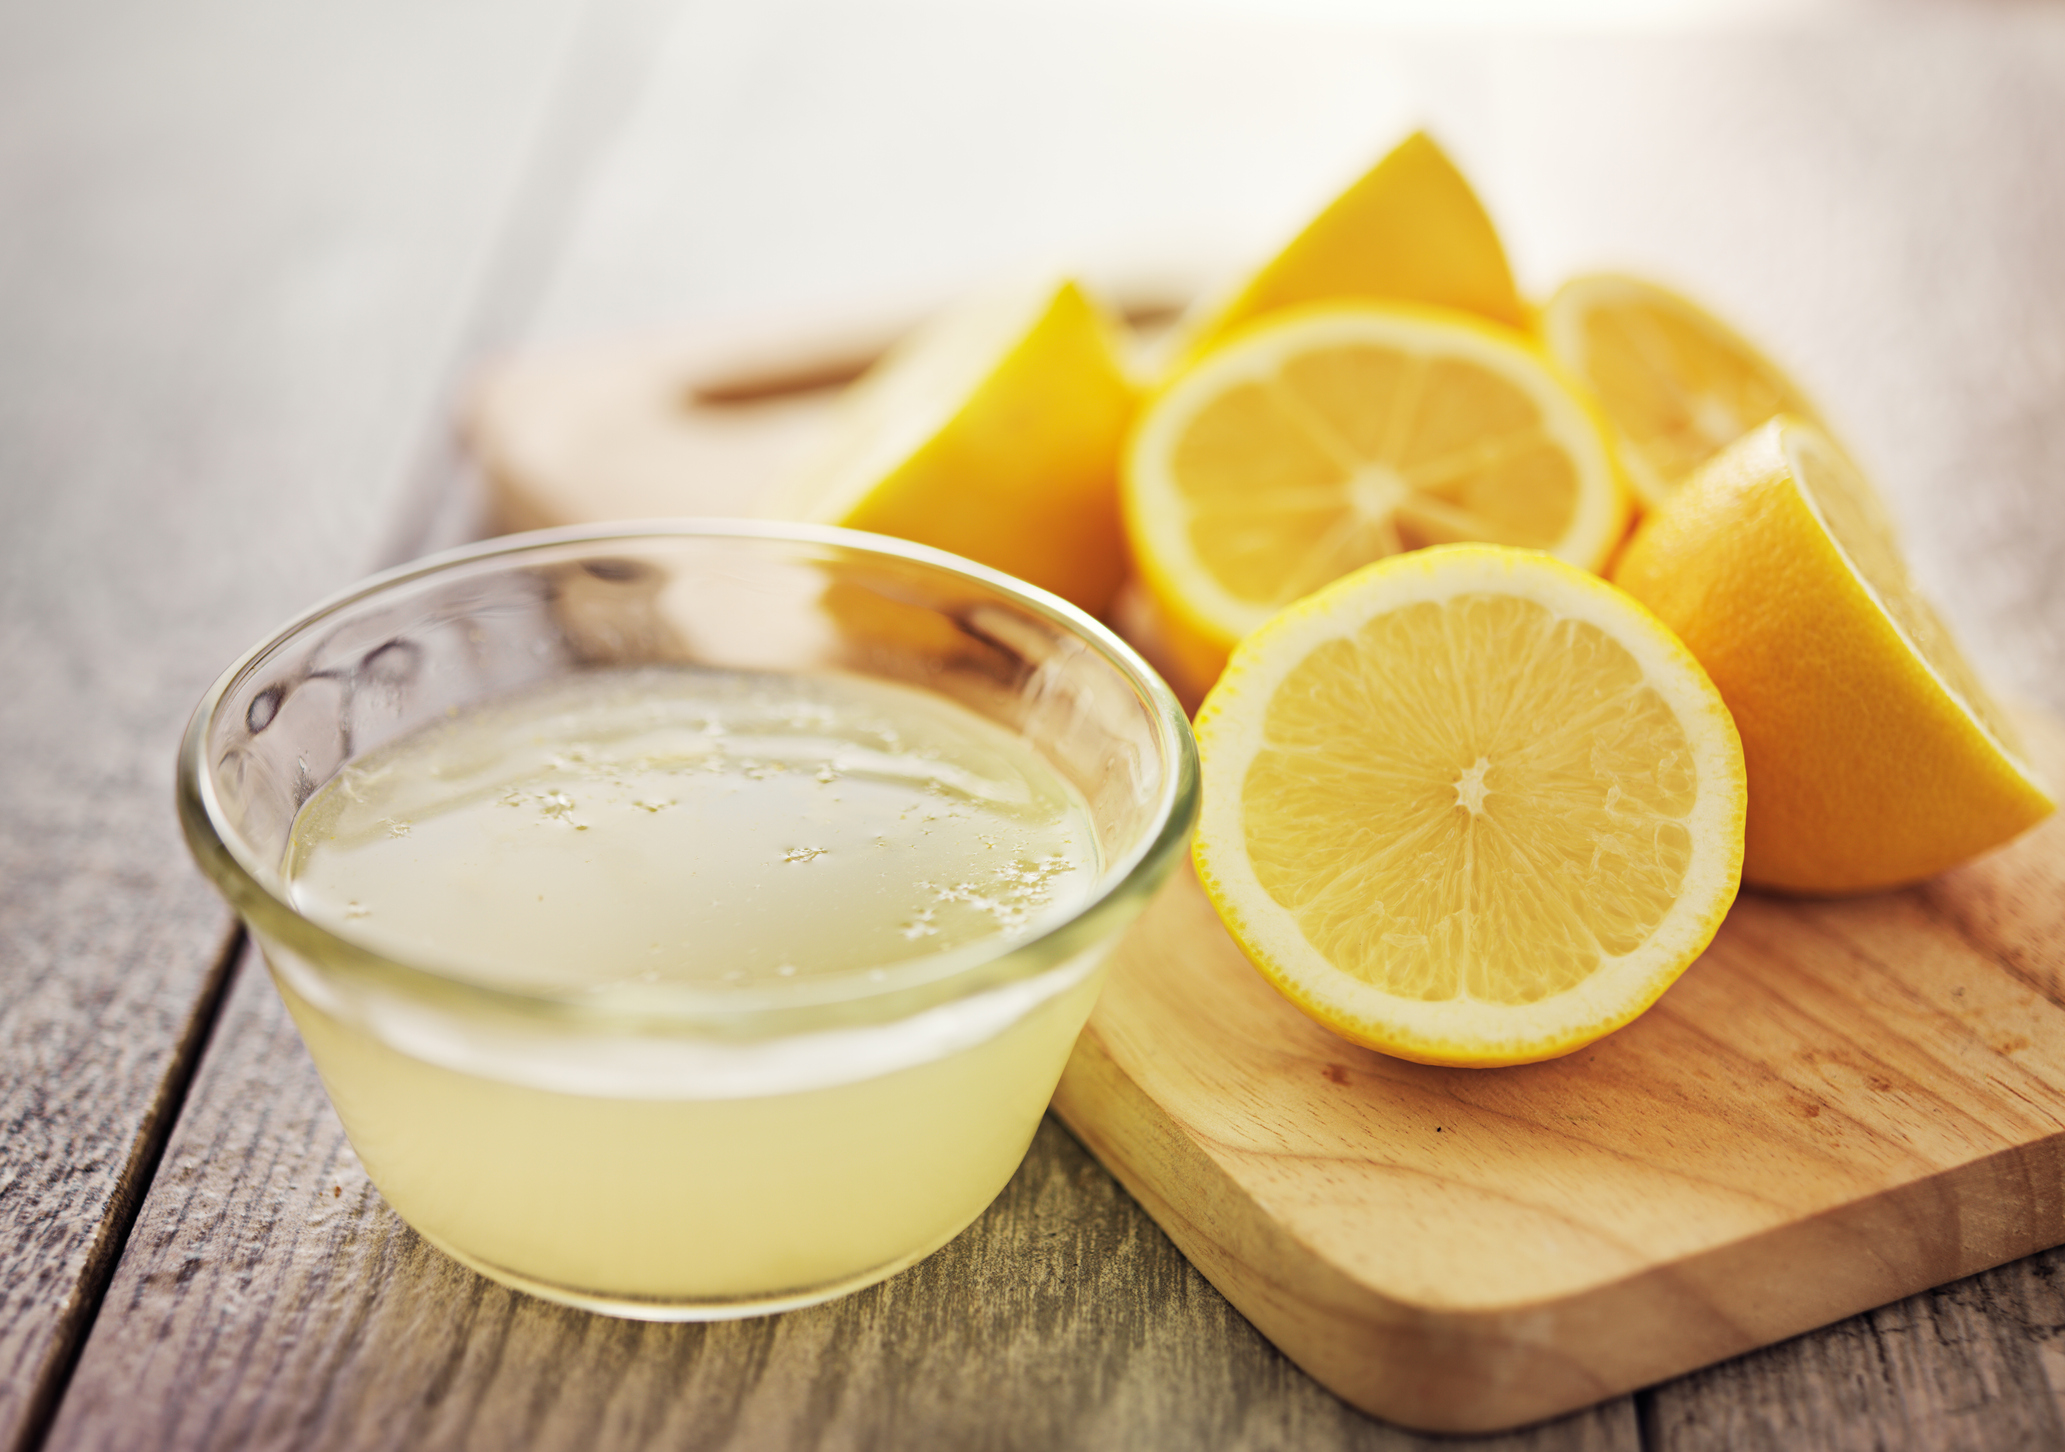 Si tienes la piel grasa, el limón será tu mejor aliado porque al ser un ingrediente astringente reducirá el exceso de grasa en el rostro